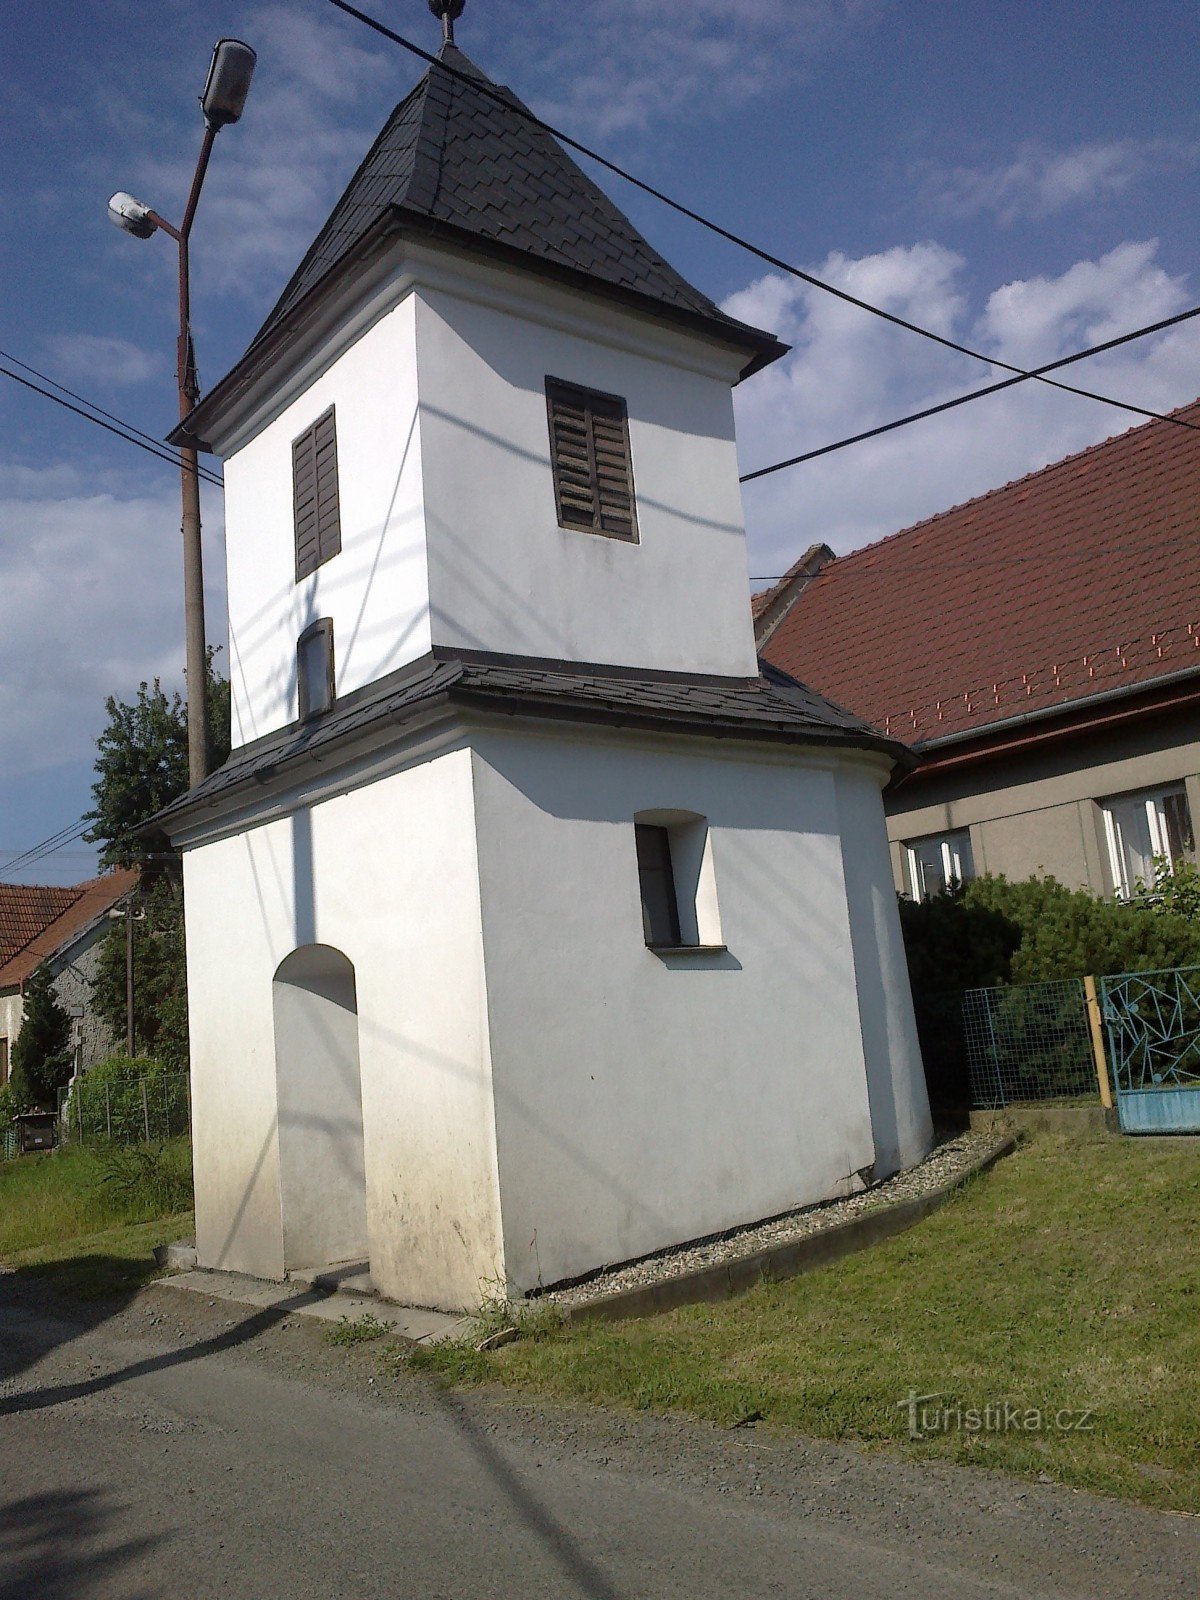 Růžov I 的小教堂。